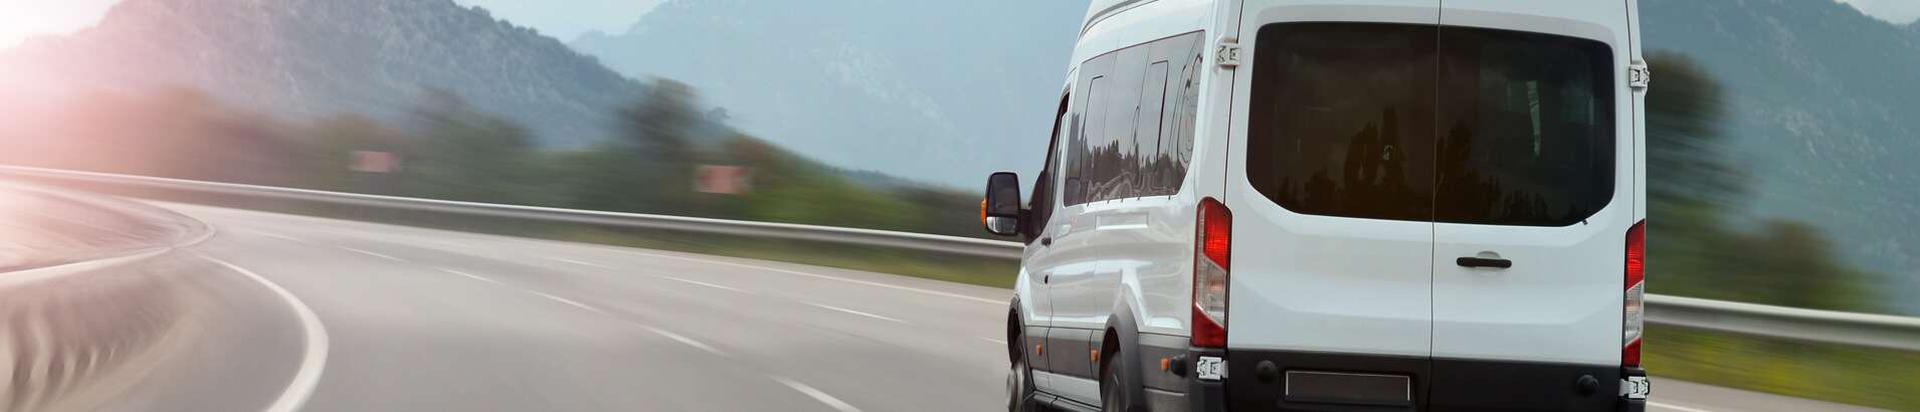 Deklau Transport on aastast 2005 tegutsev, eriti nõudlikule kliendile teenuseid pakkuv ettevõte. Oleme spetsialiseerunud aja- ja temperatuurikriitiliste kaupade transpordile Tallinnas, Harjumaal ja Soomes.